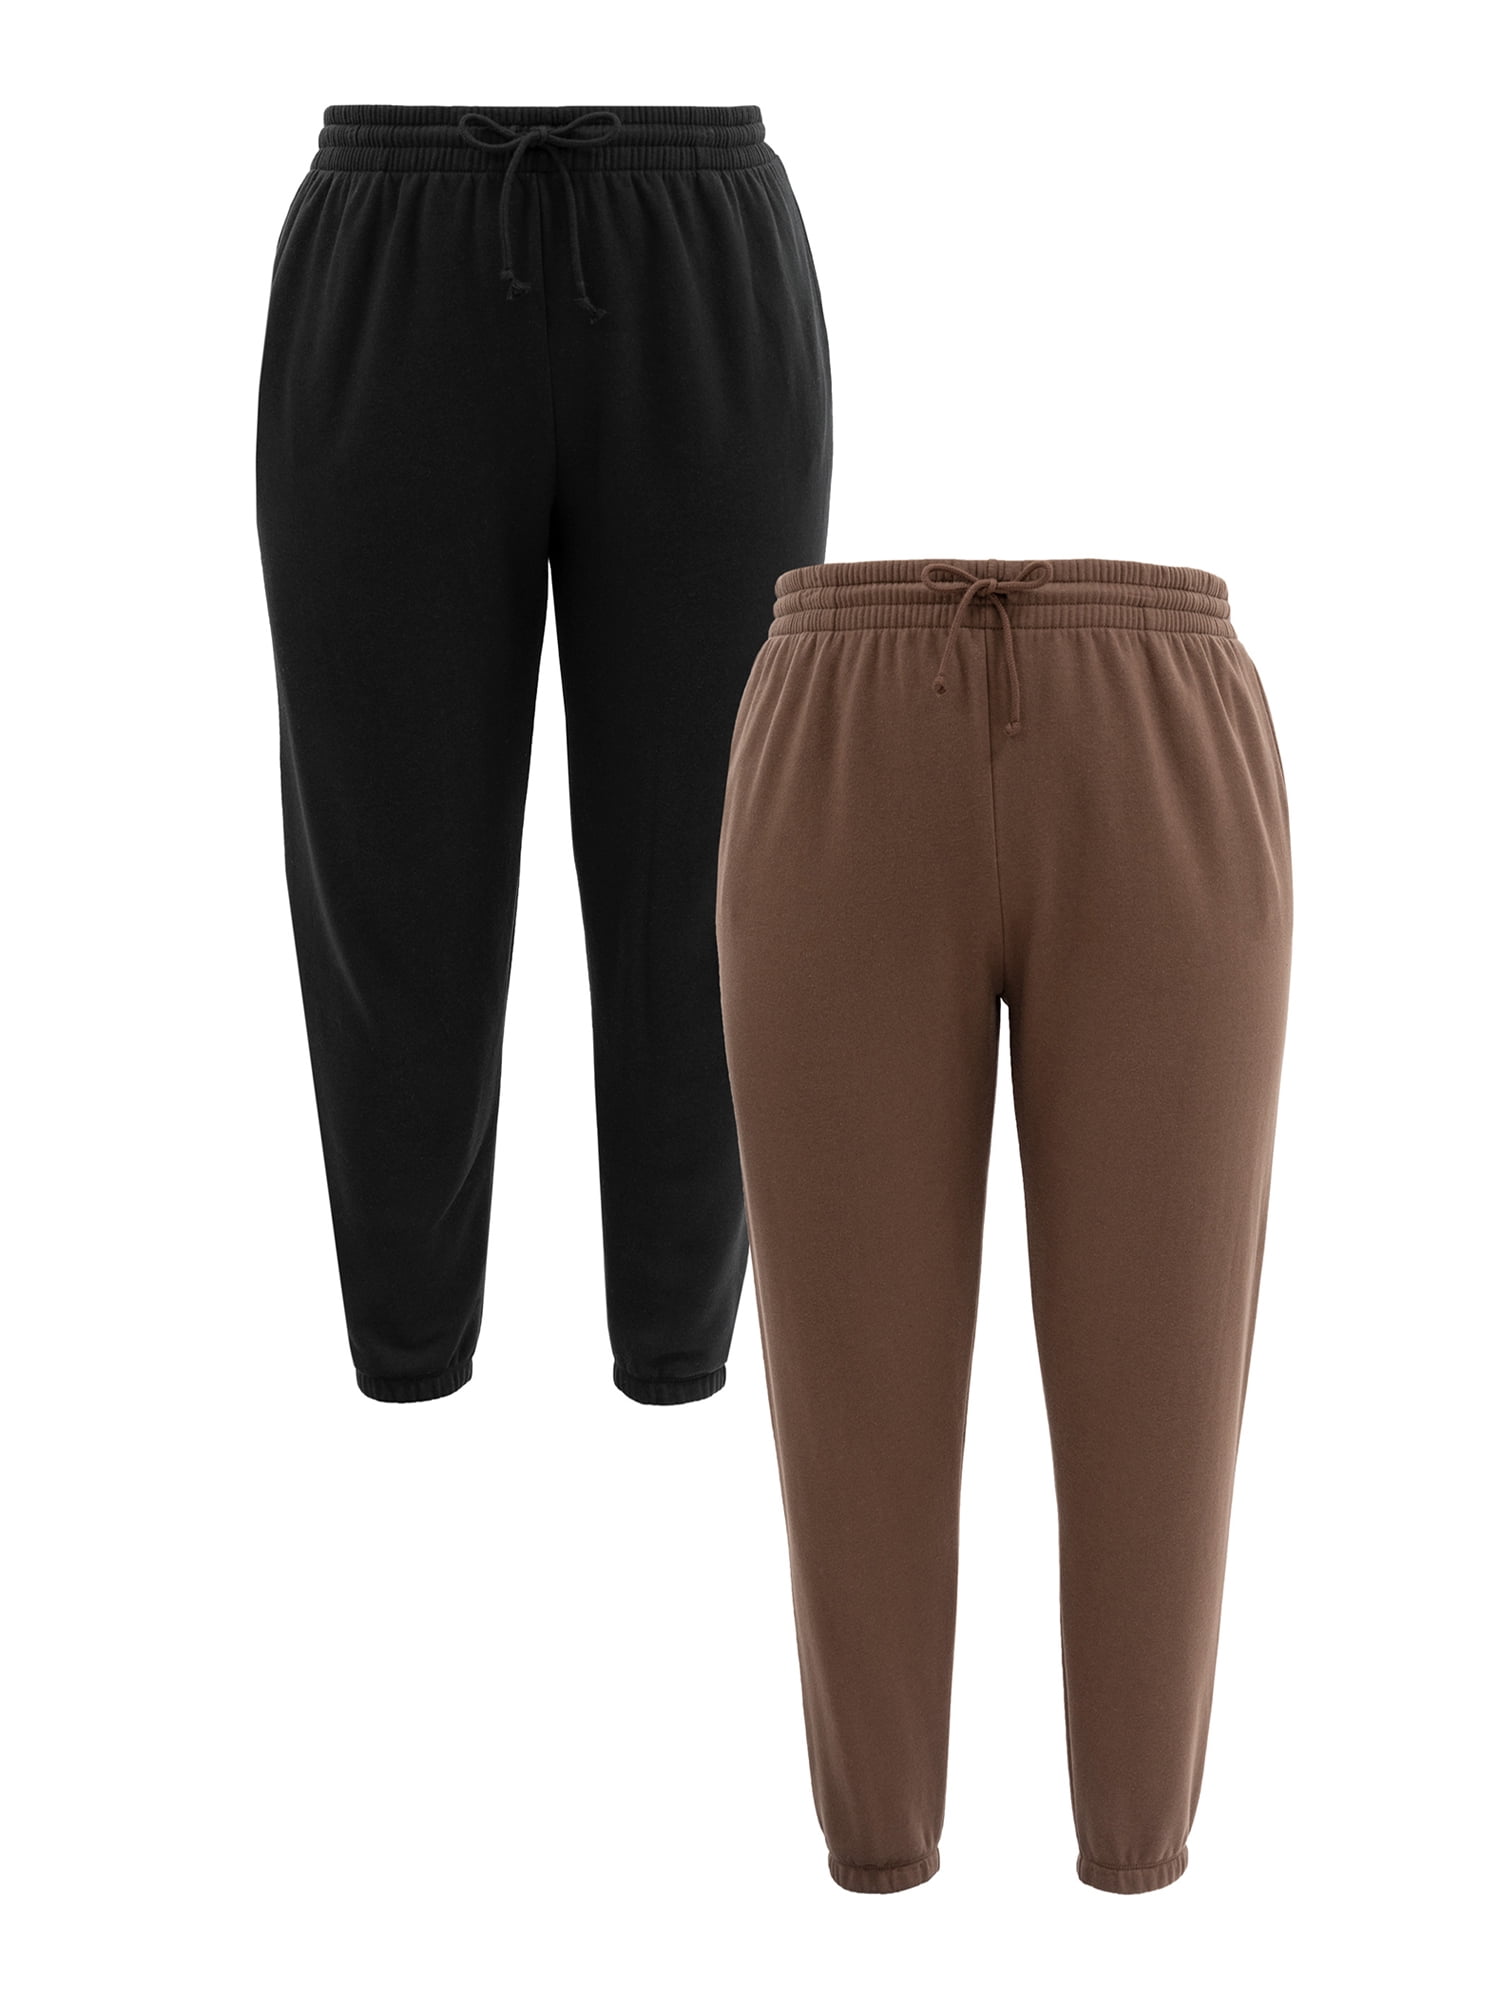 Terra & Sky Women's Plus Size Fleece Sweatpants, 2-Pack